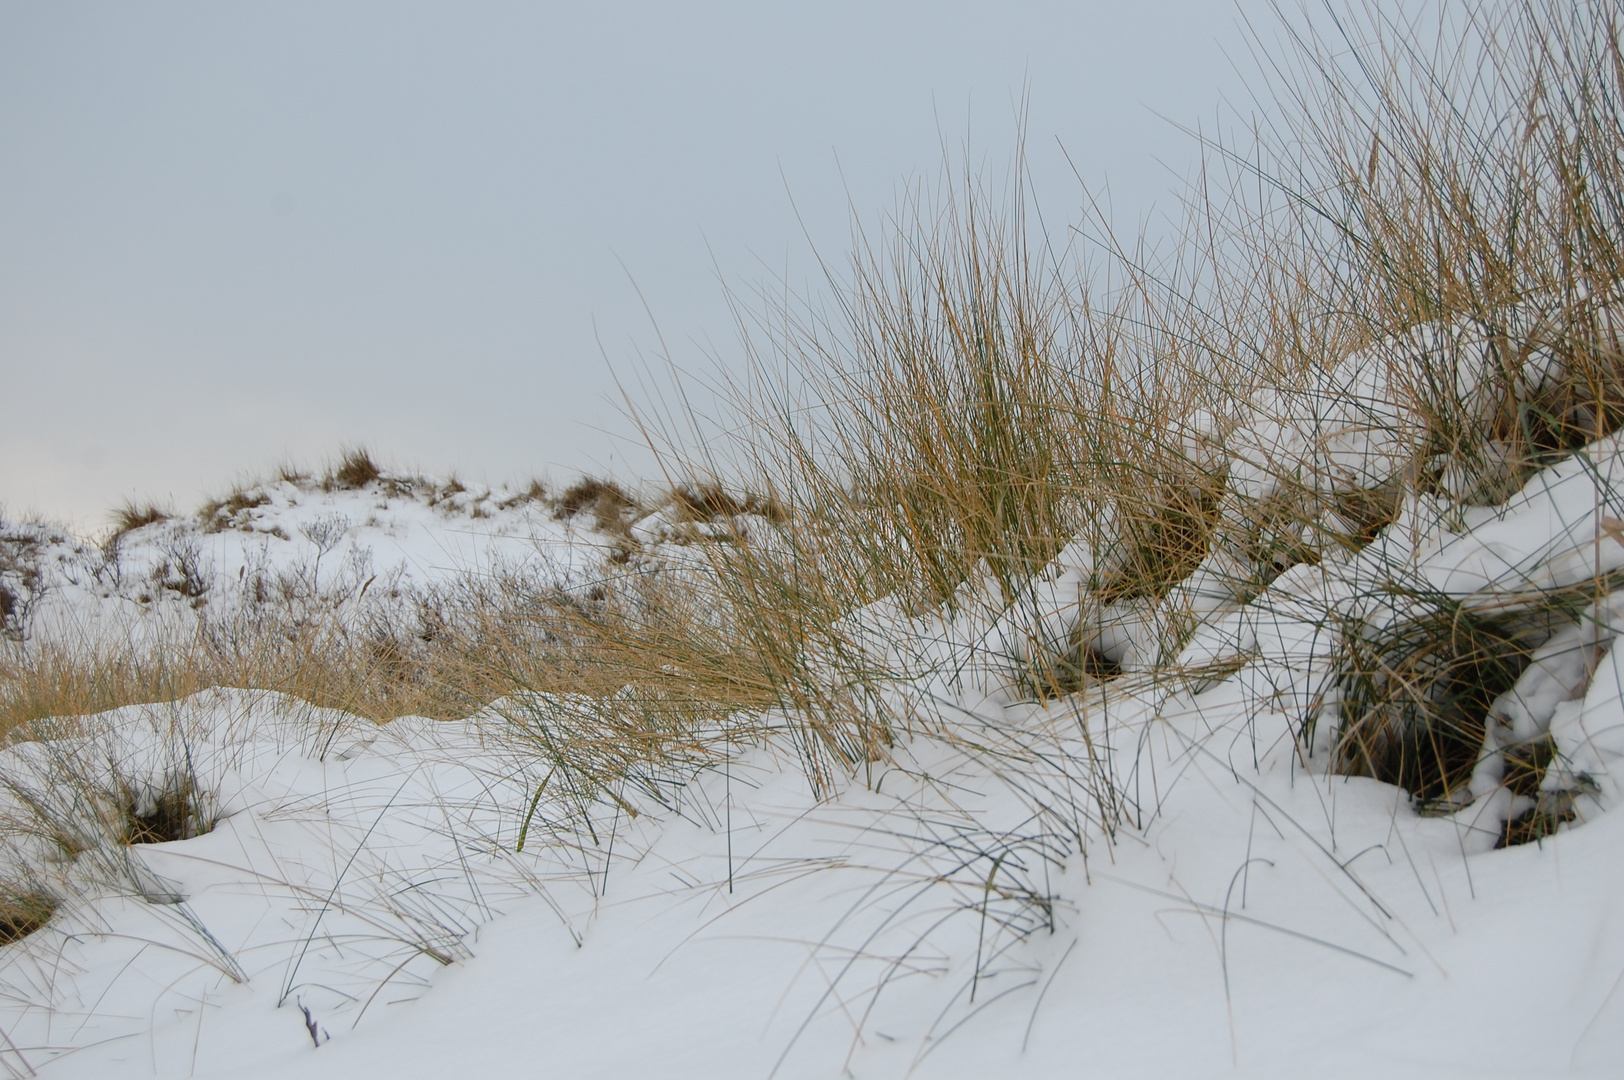 Norderneyer Dünen im Schnee